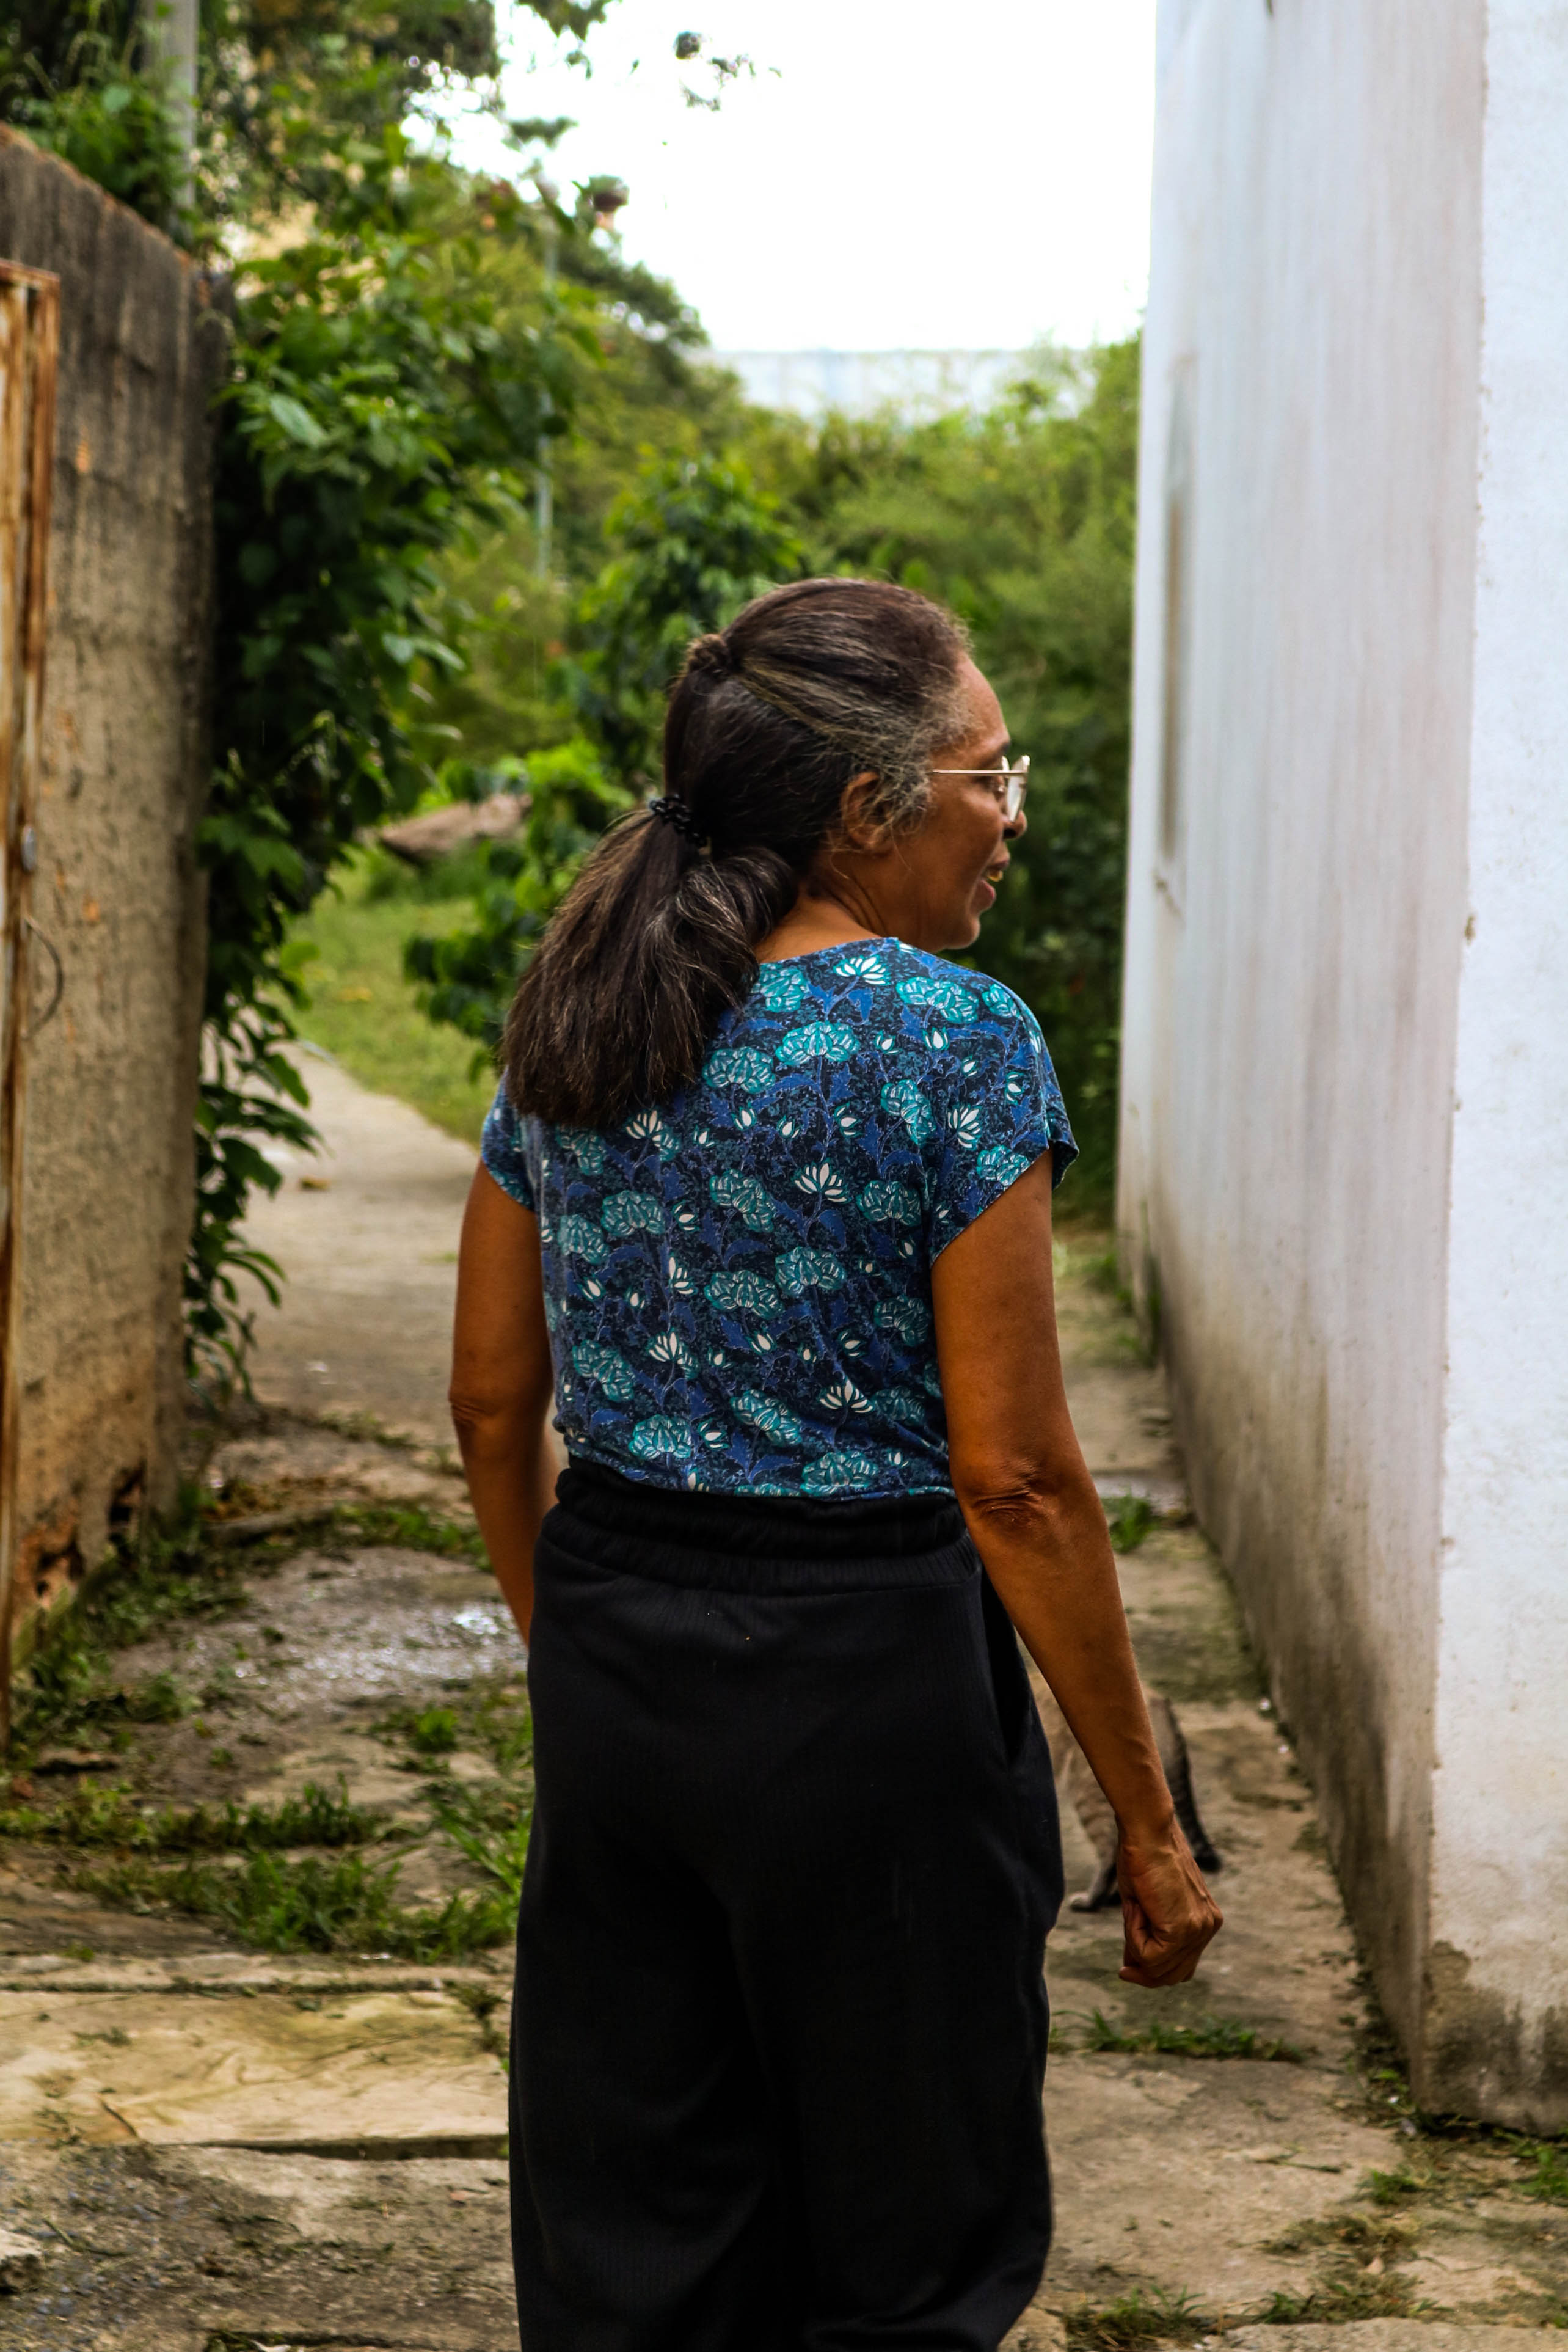 Quando recebe visitas, Gláucia faz questão de mostrar  todas as áreas que compõem o quilombo: casas e quintais. Quanto mais gente reconhecer a história desses territórios, maior a pressão para reconhecimento legal.